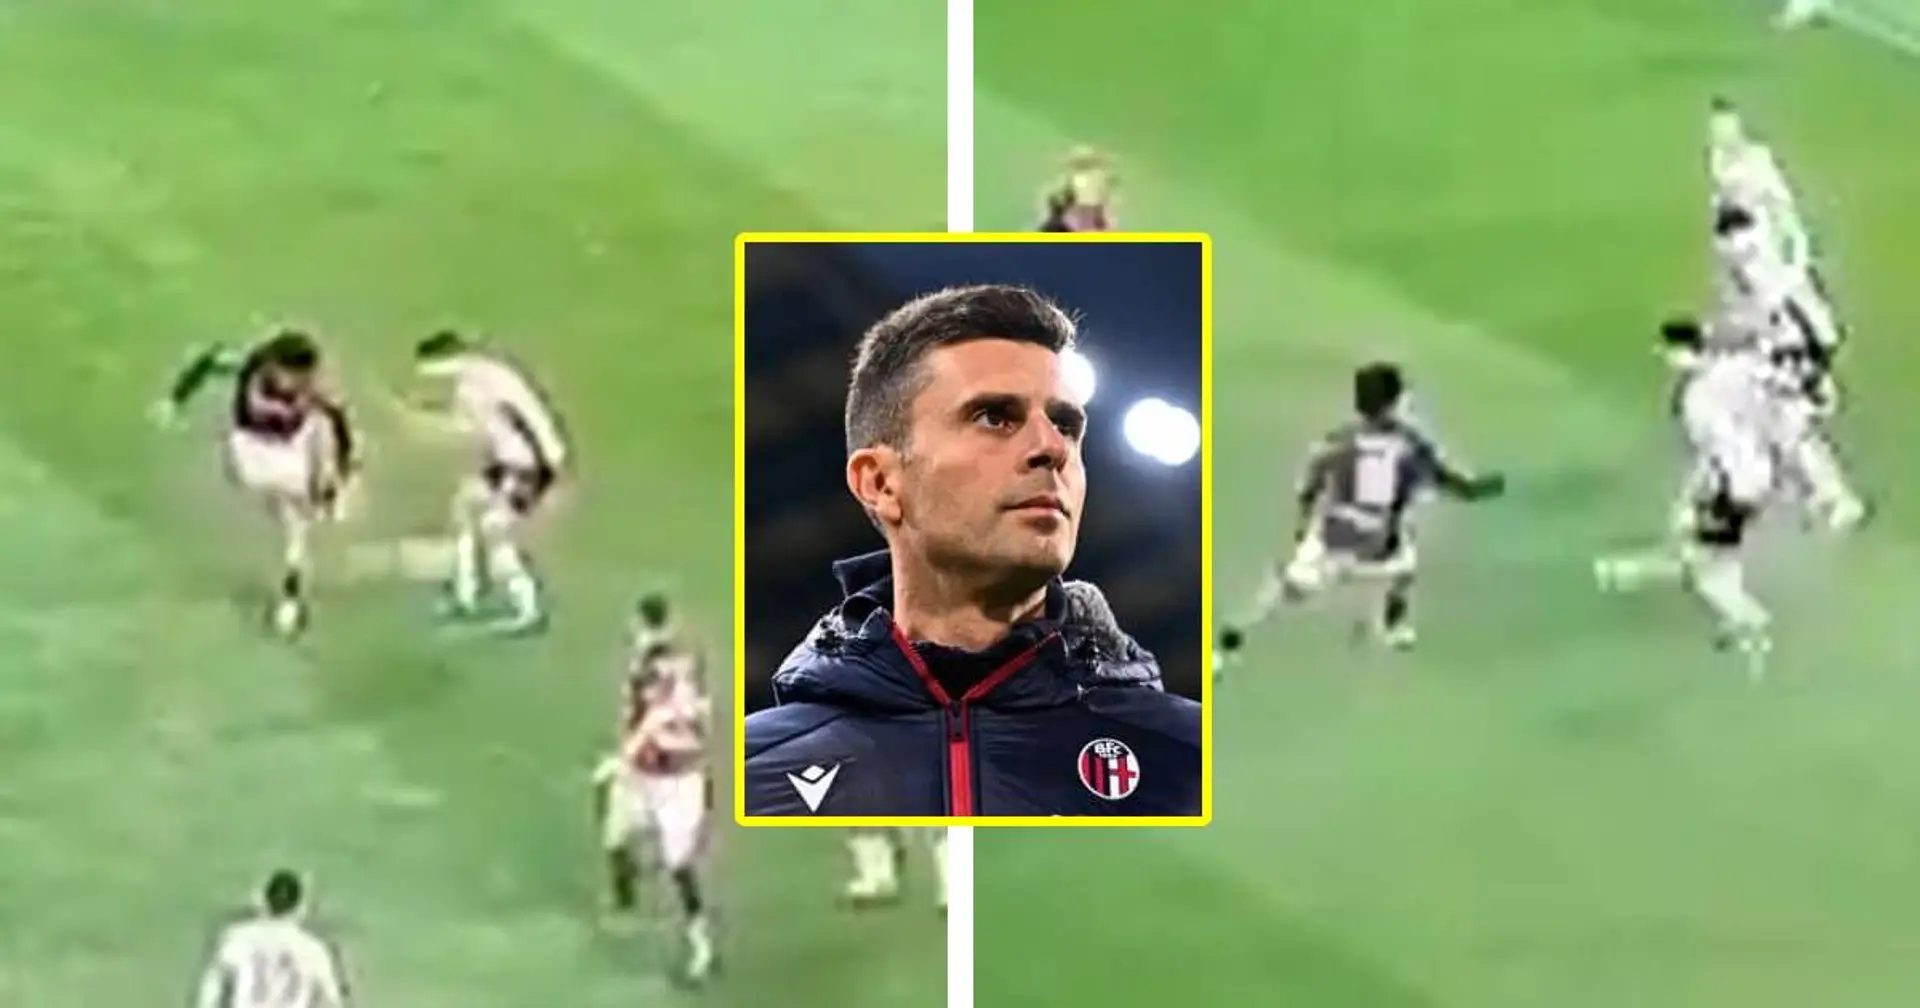 Une séquence en 9 images de Bologne vs Atalanta montre parfaitement les principes de jeu de Thiago Motta